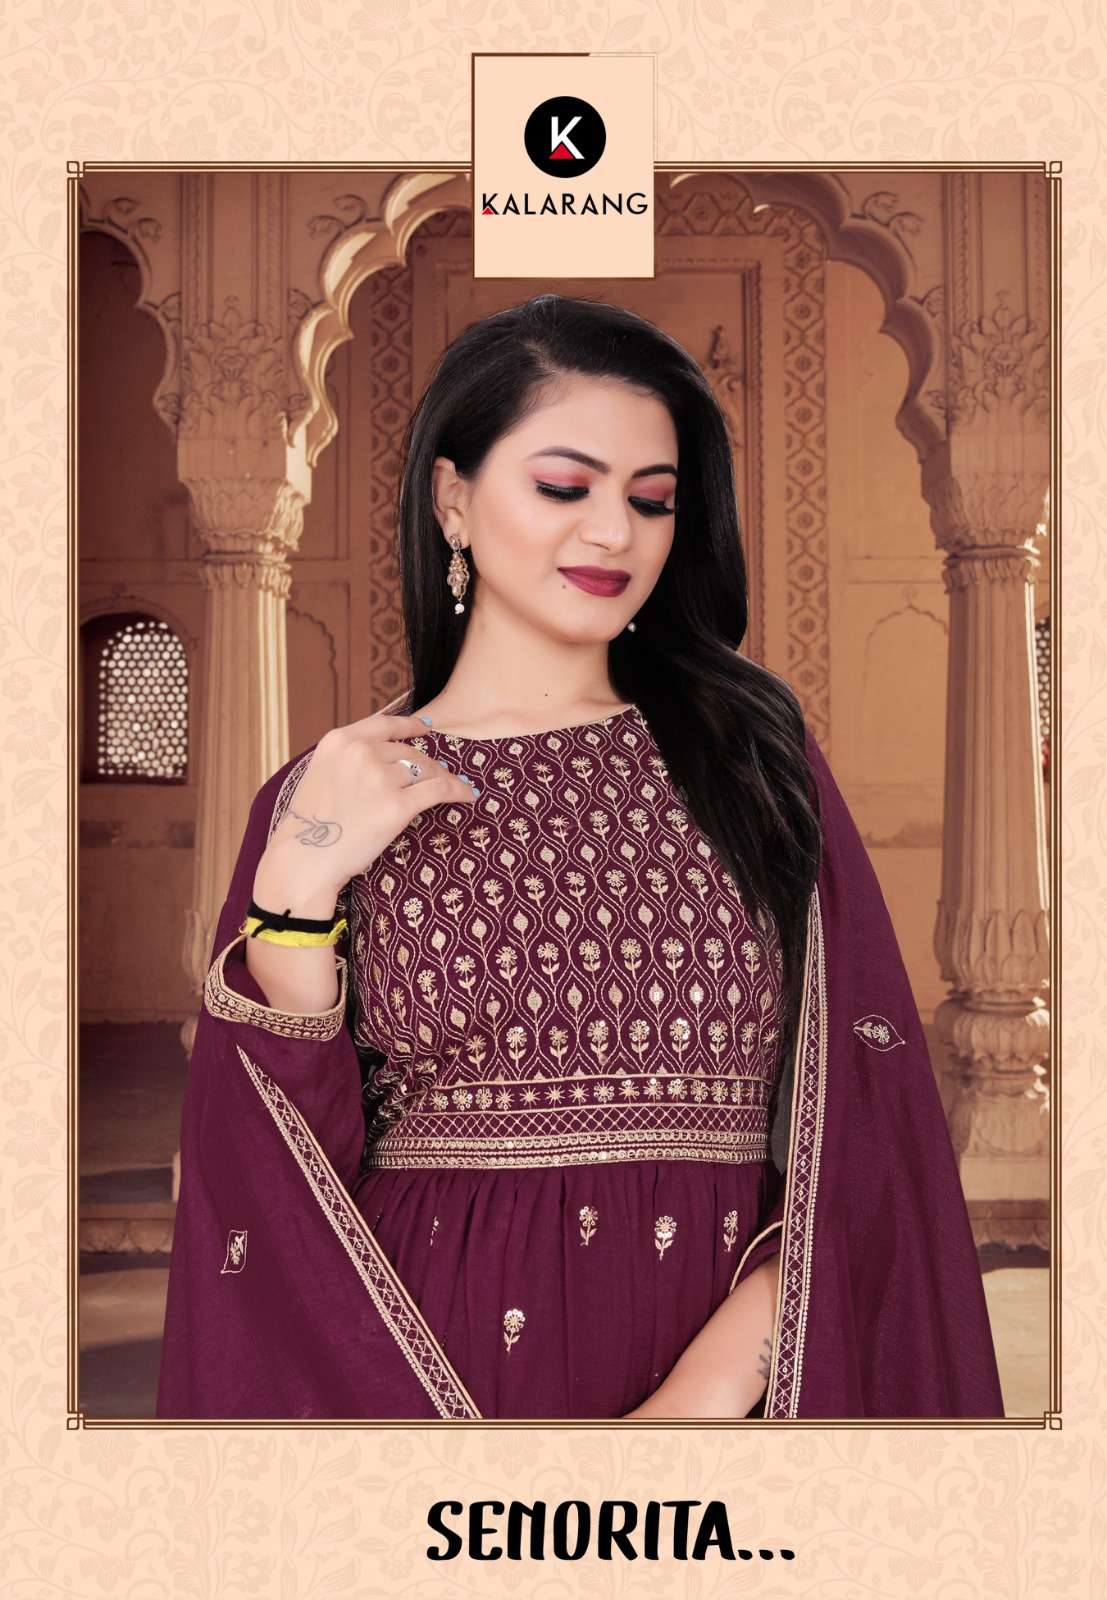 kalarang senorita 6203 series vichitra silk with embroidery work salwar kameez catalogue exporter surat 